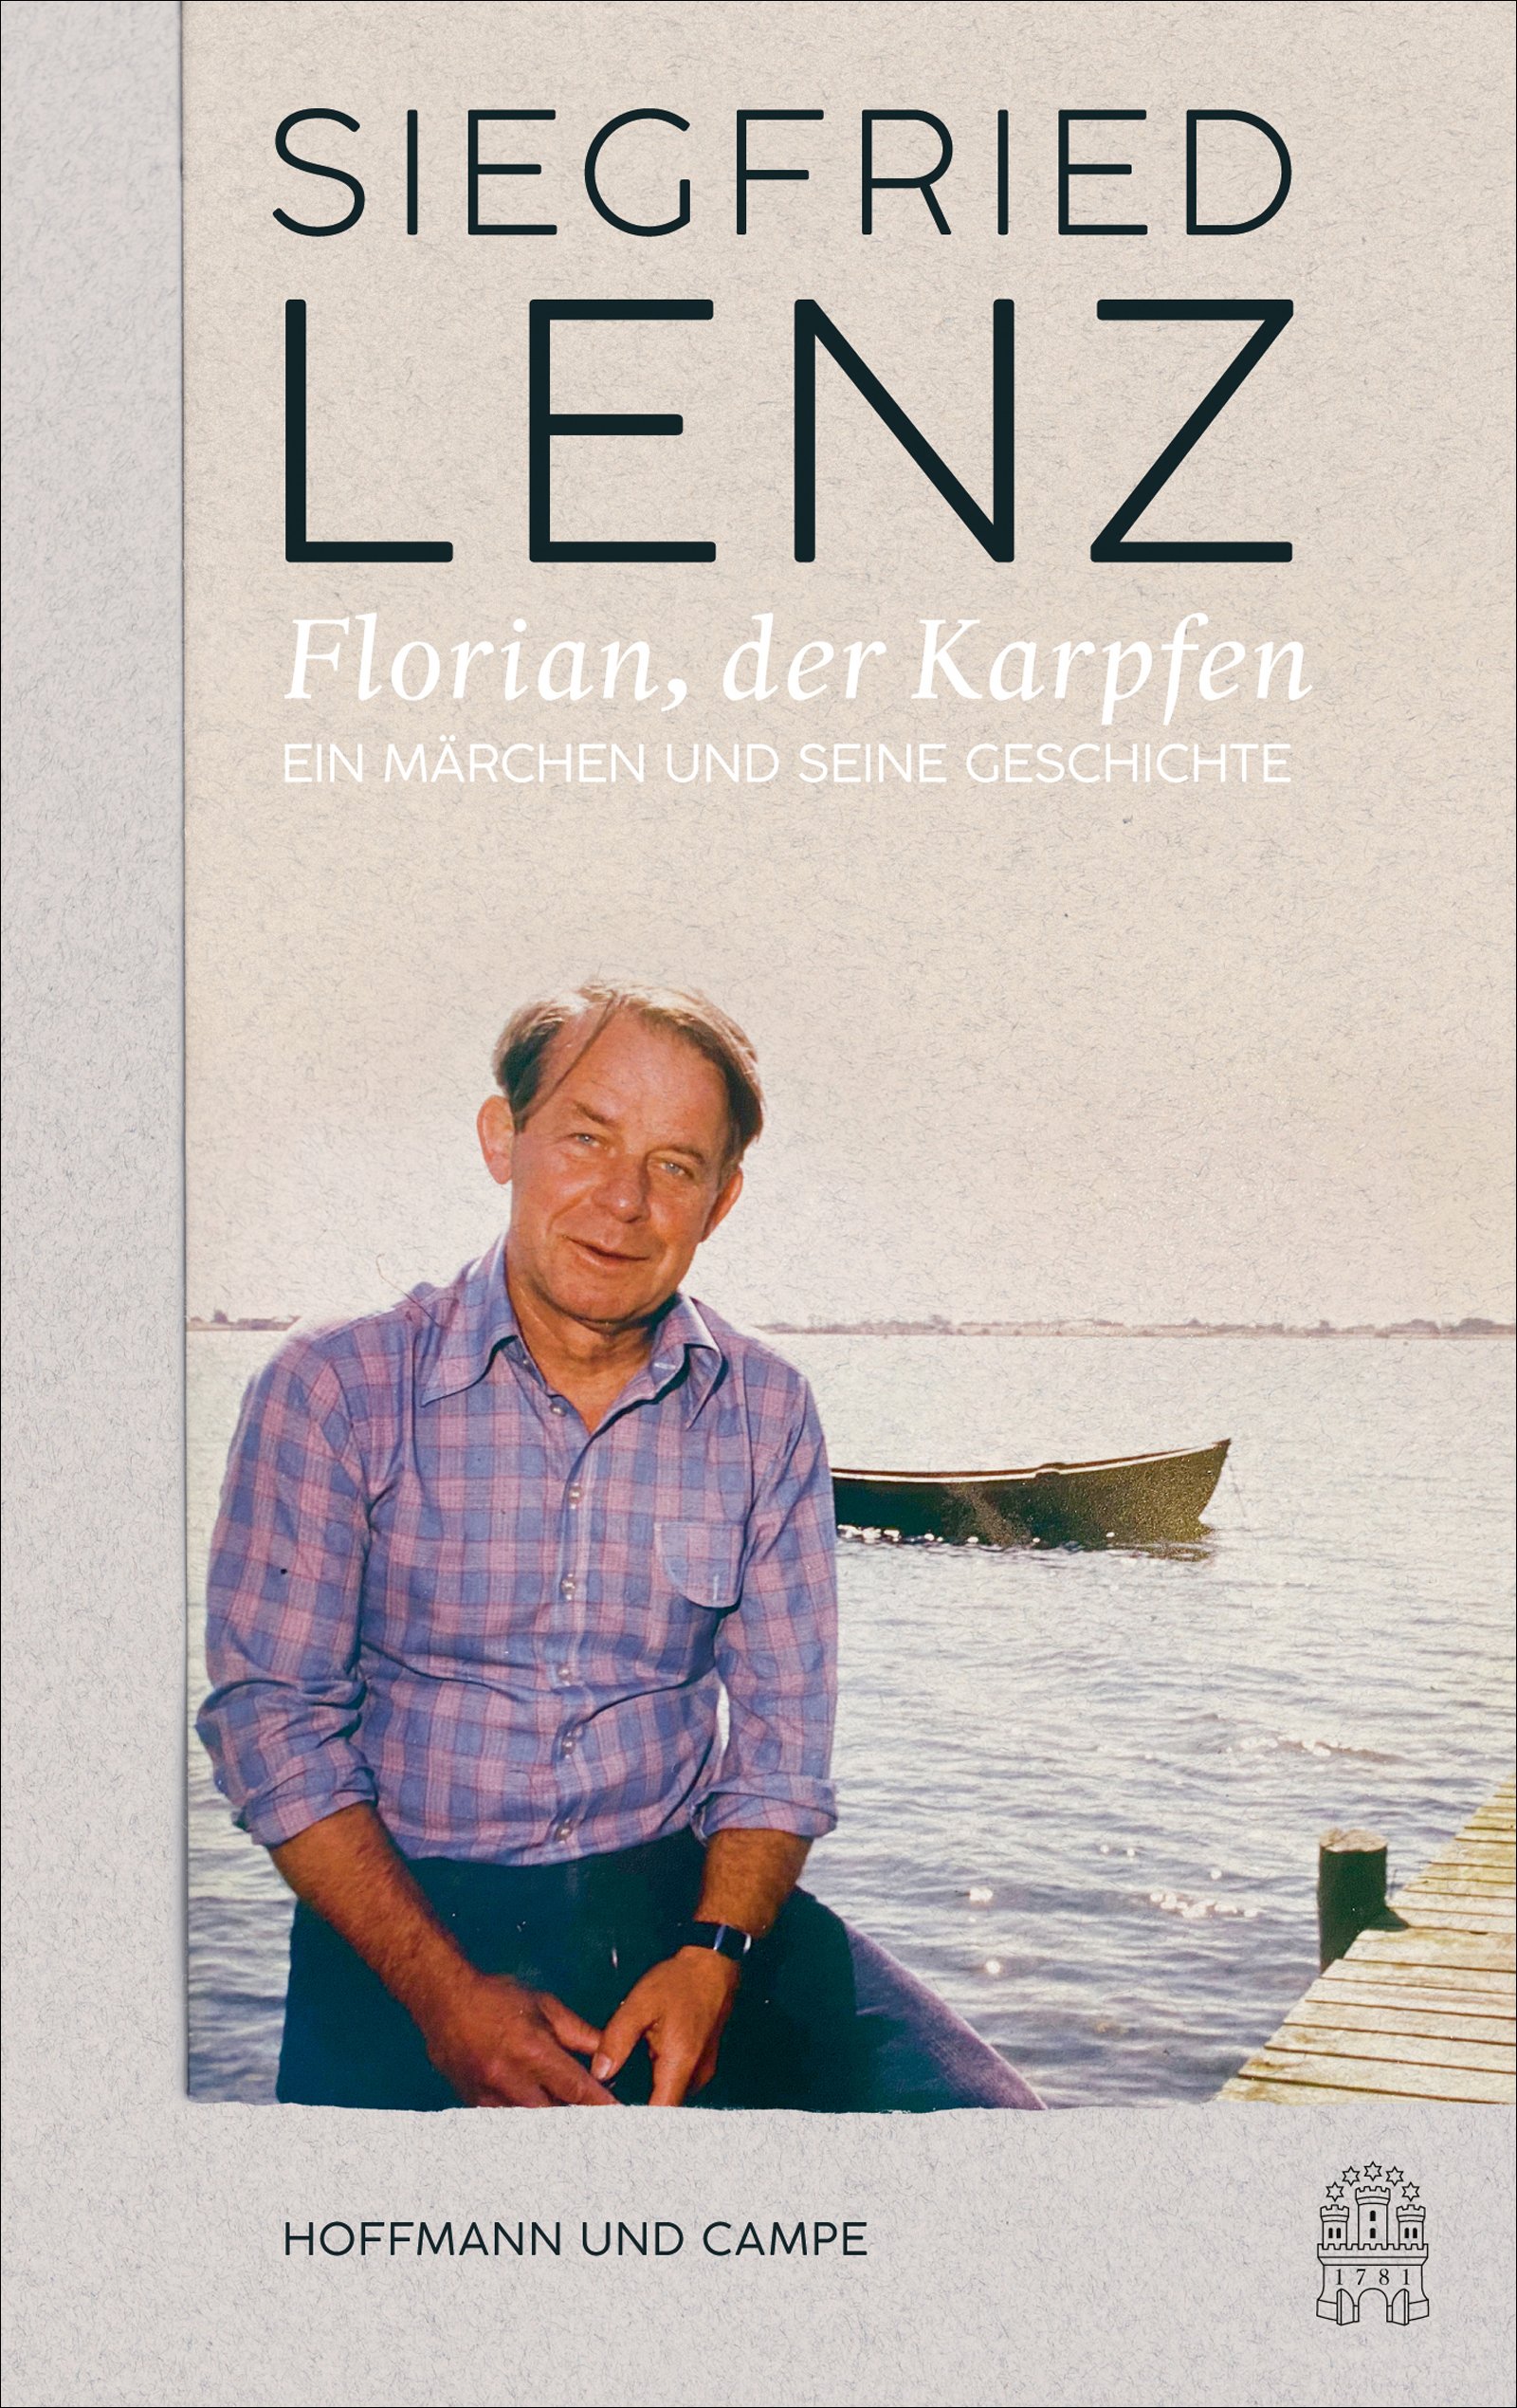 „Florian, der Karpfen“ von Siegfried Lenz wurde 1953 erstmals im Kinderfunk des damaligen Nordwestdeutschen Rundfunks (NWDR) ausgestrahlt und nun im Nachlass entdeckt.